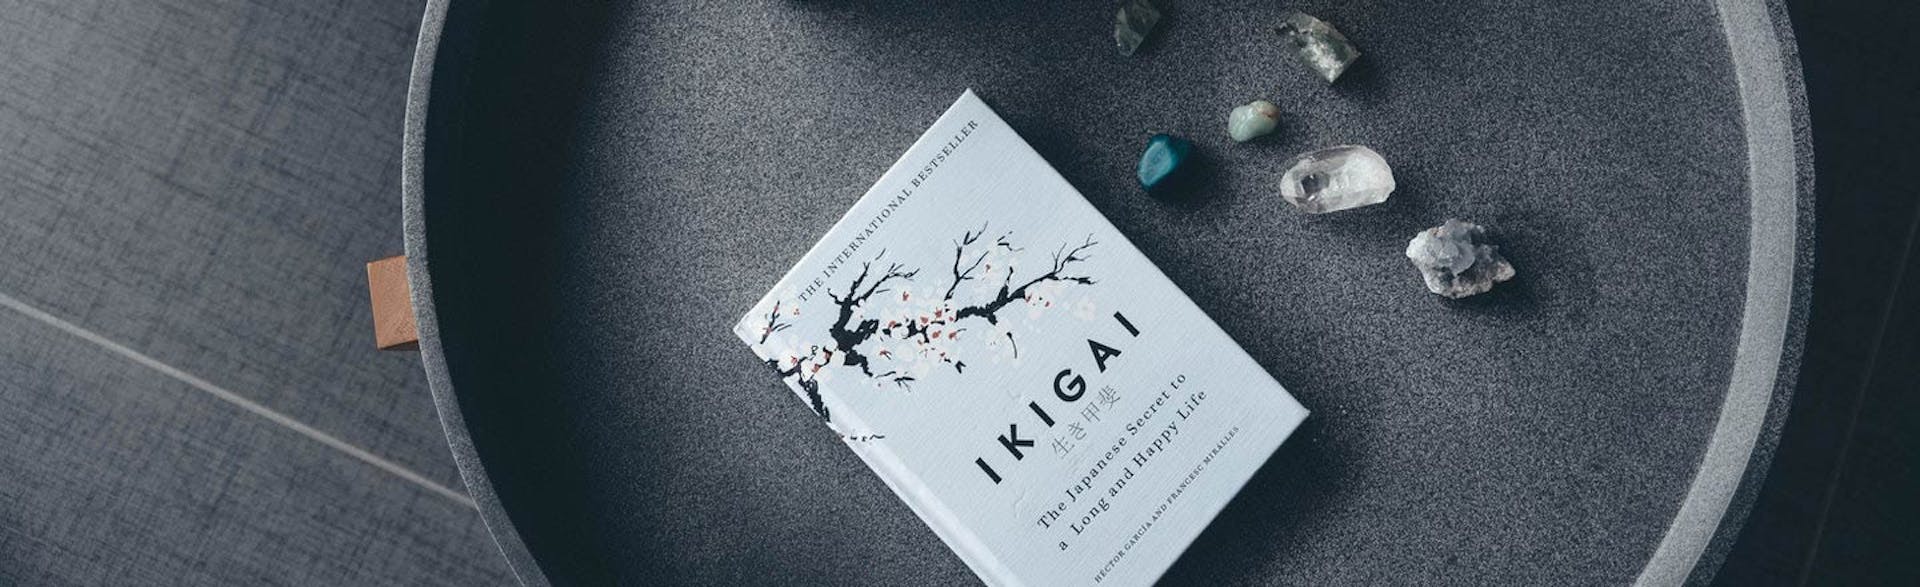 Los mejores ejemplos de Ikigai para levantarte de la cama día a día